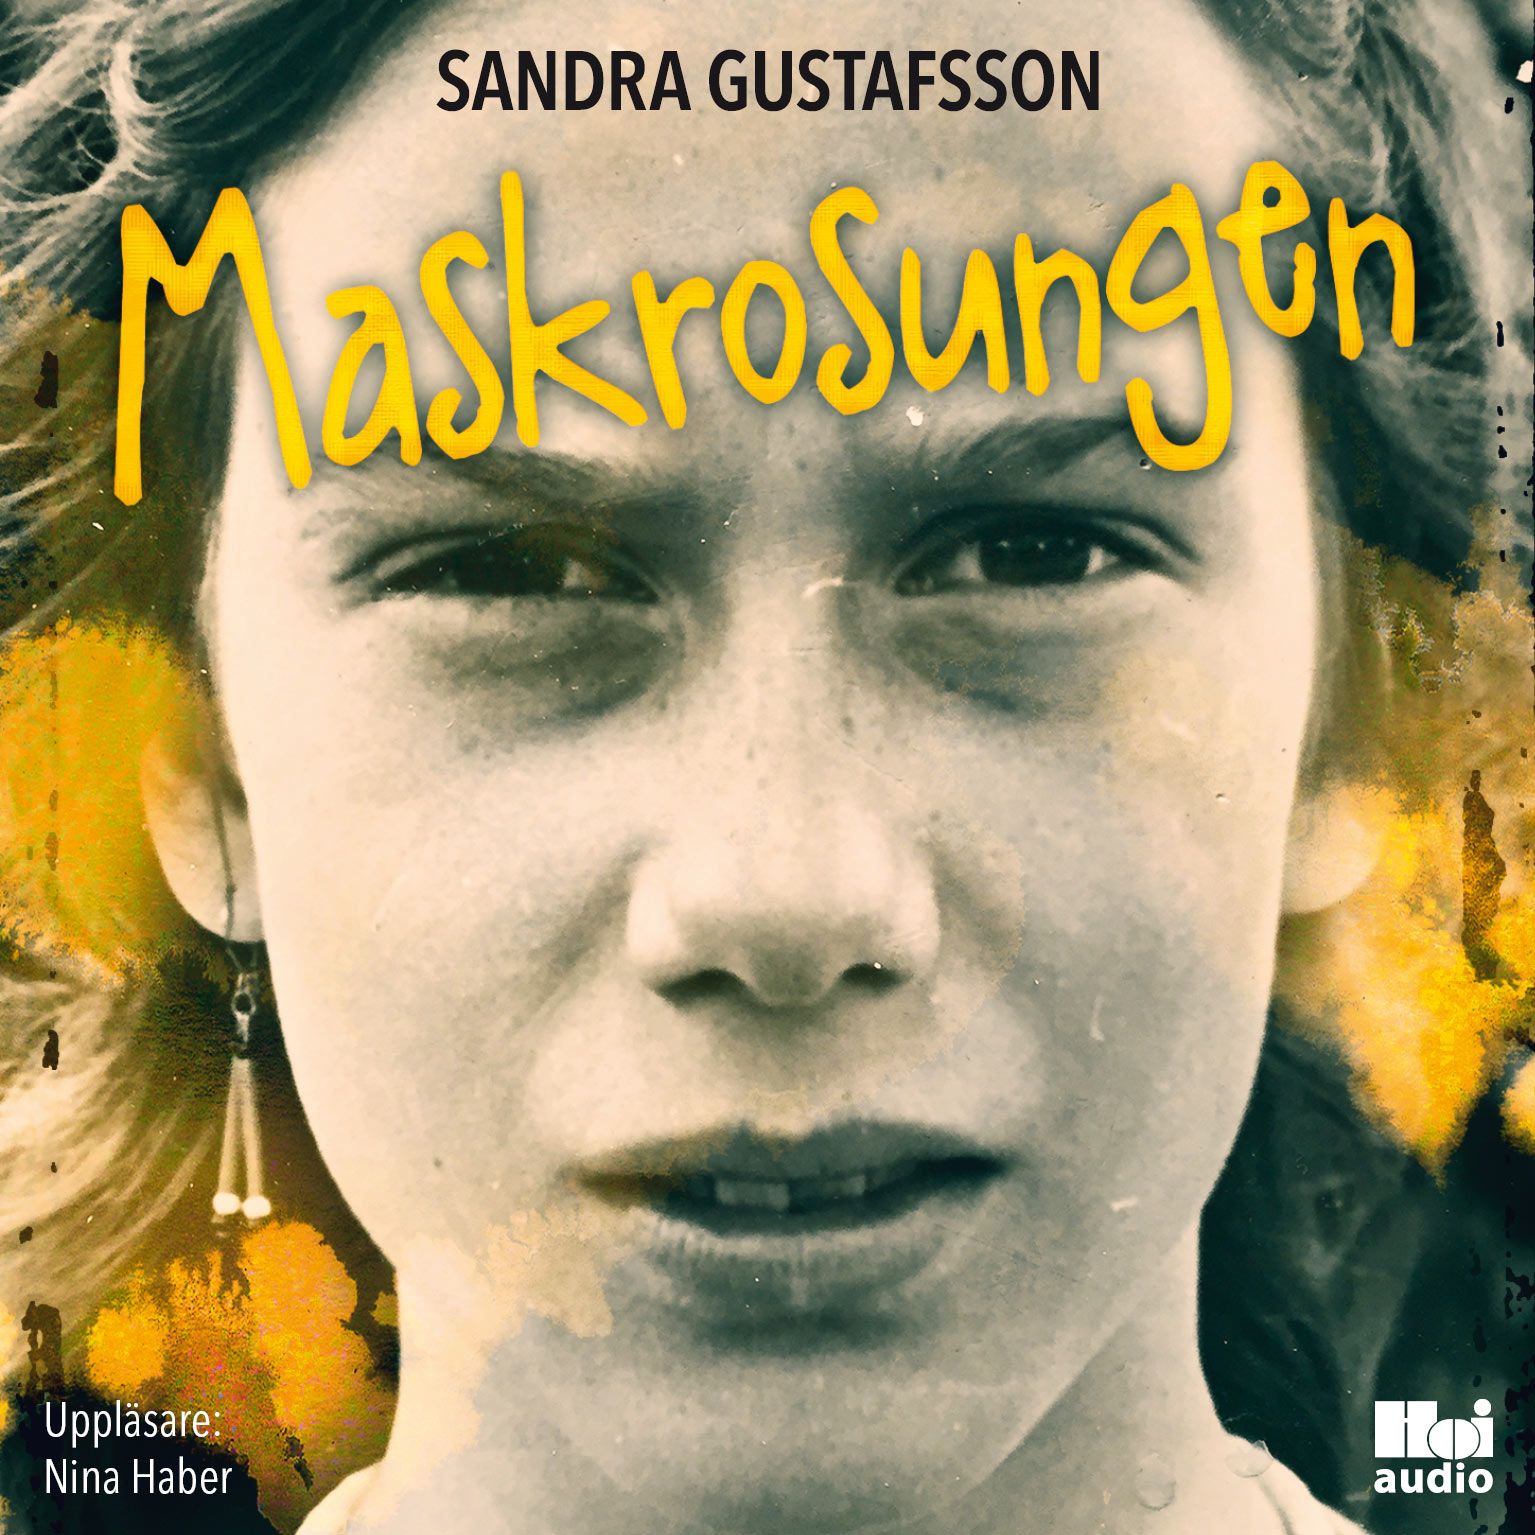 Maskrosungen, ljudbok av Sandra Gustafsson